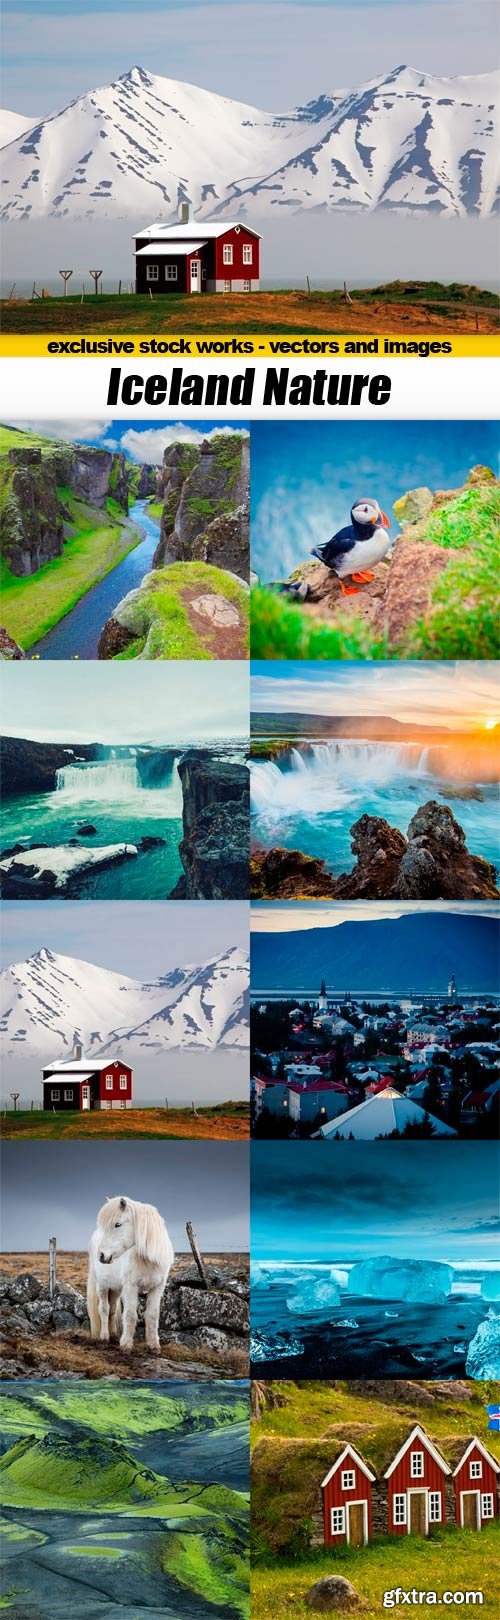 Iceland Nature - 10x JPEG